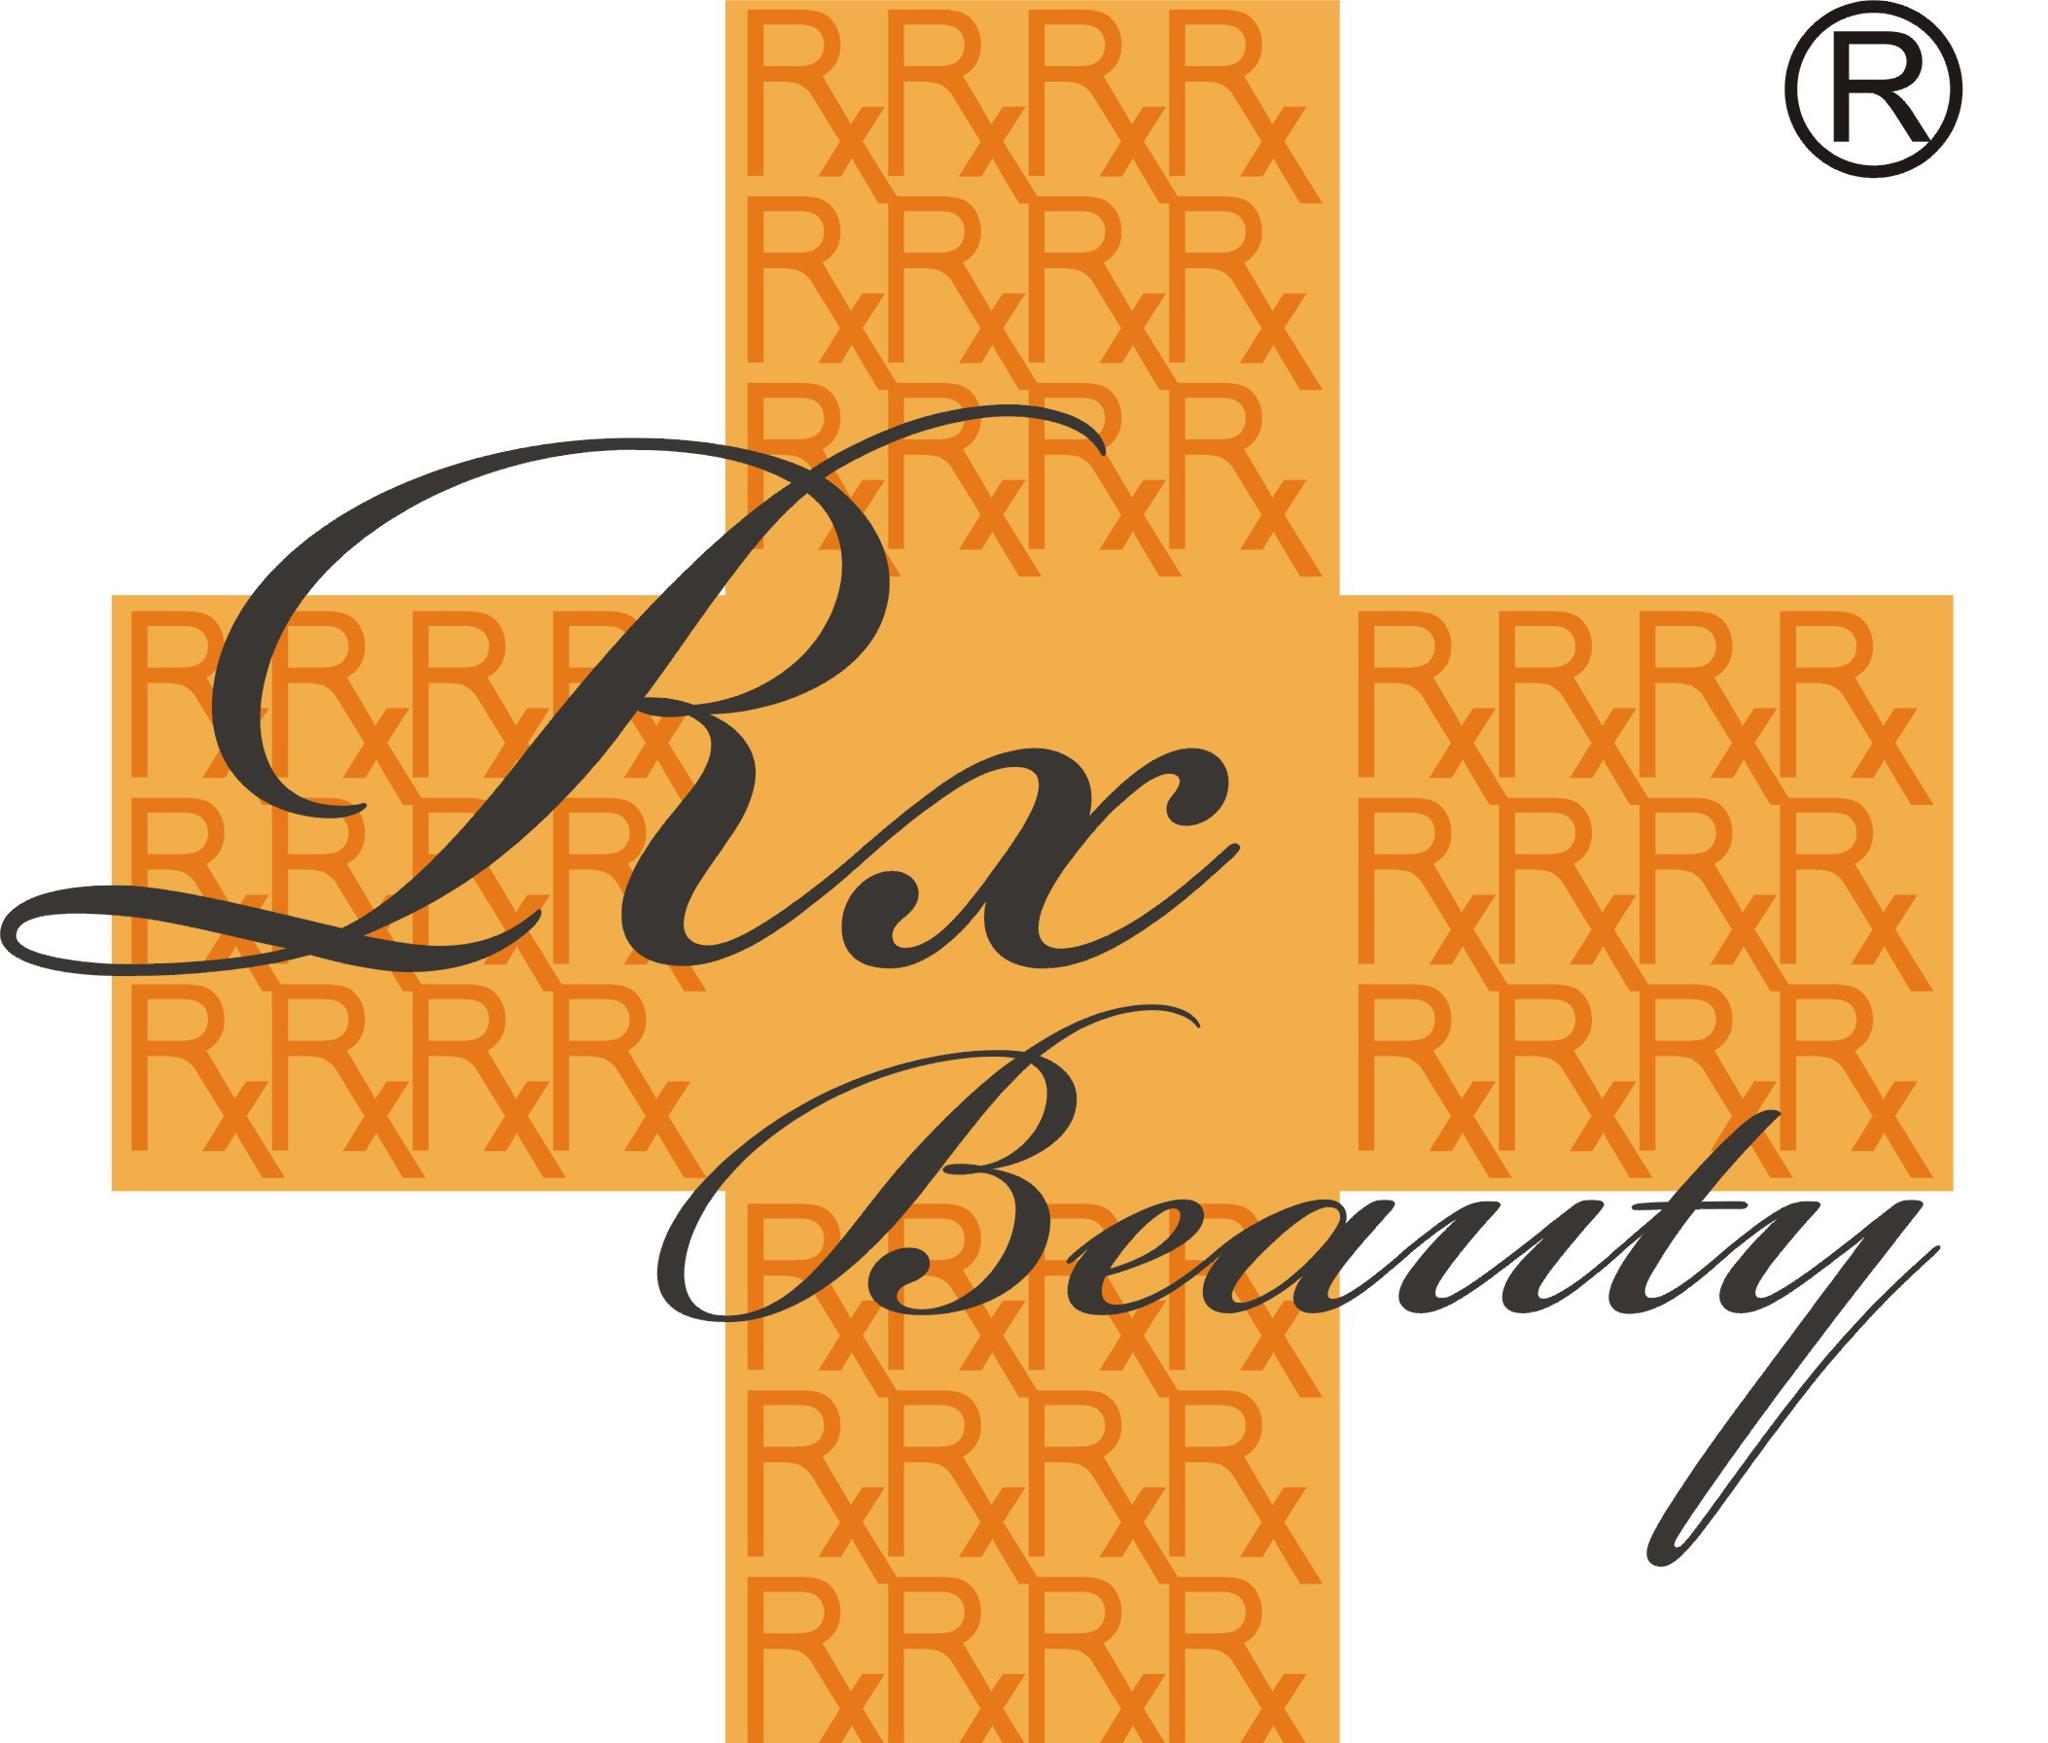 美容院 Beauty Salon: Rx Beauty (荃灣店)